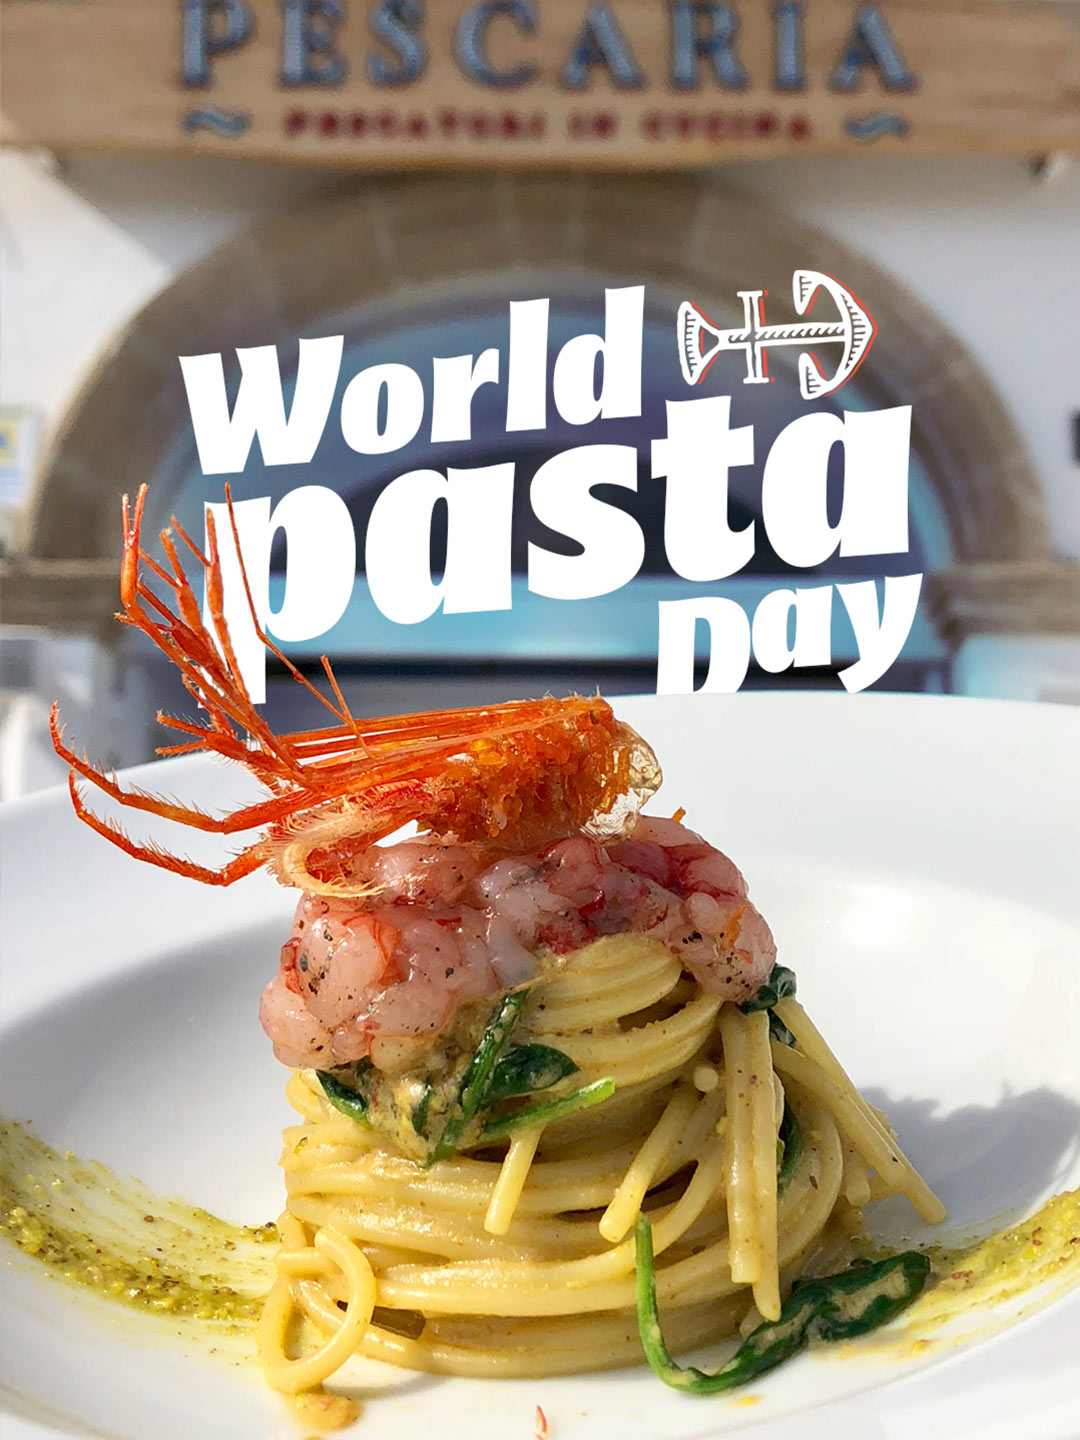 Pescaria world pasta day